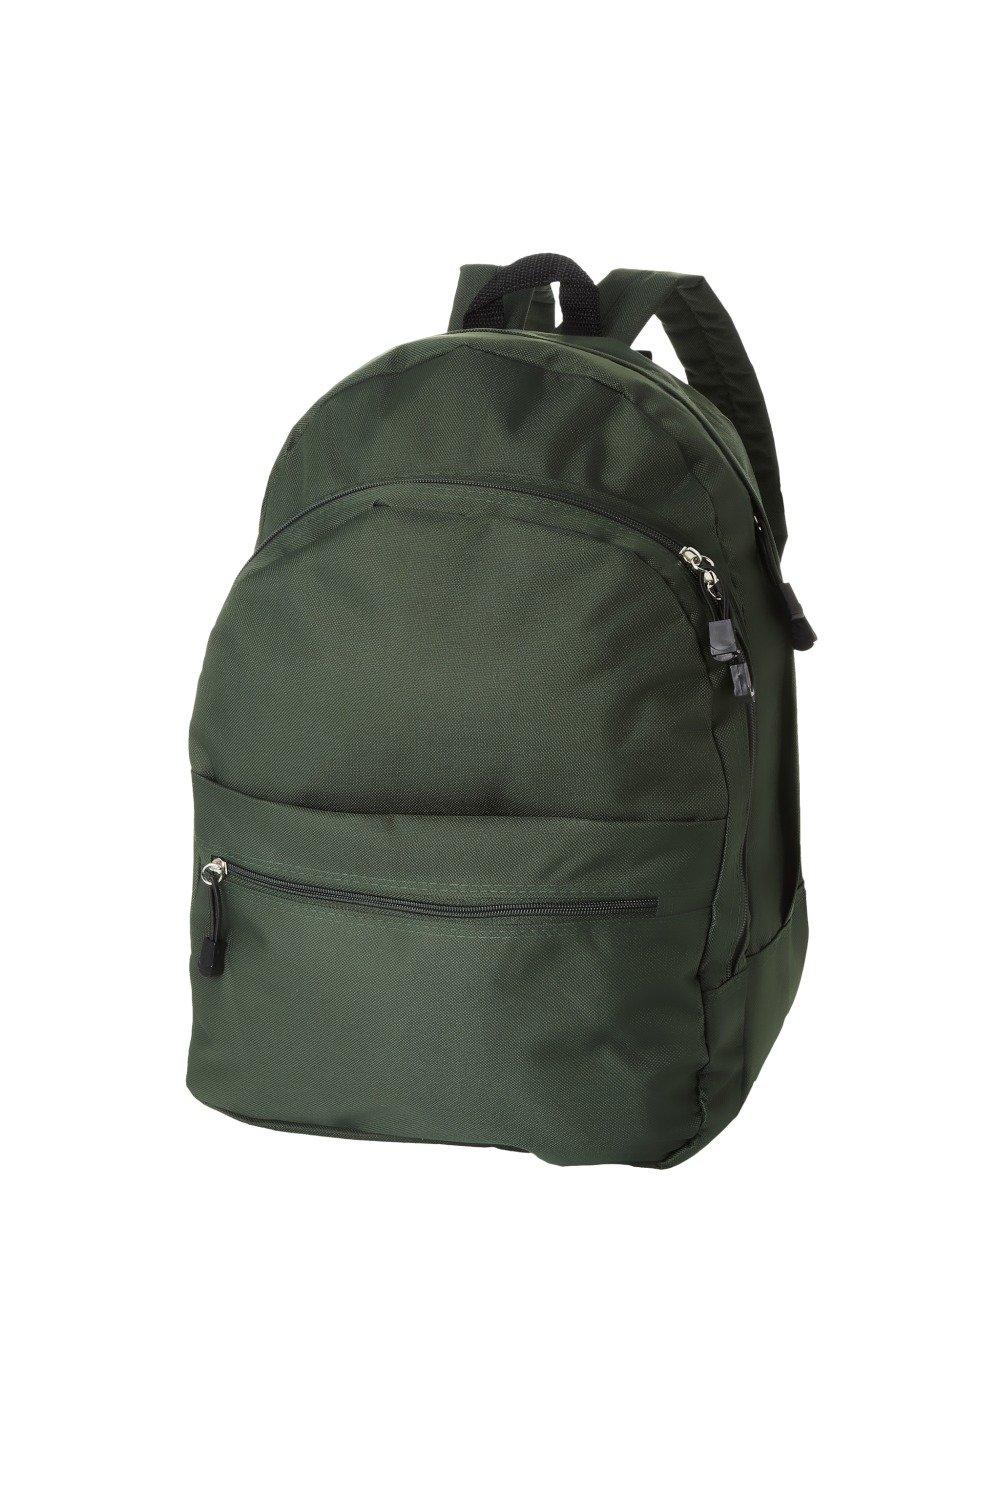 Рюкзак Trend (2 шт.) Bullet, зеленый рюкзак с карманом единорог